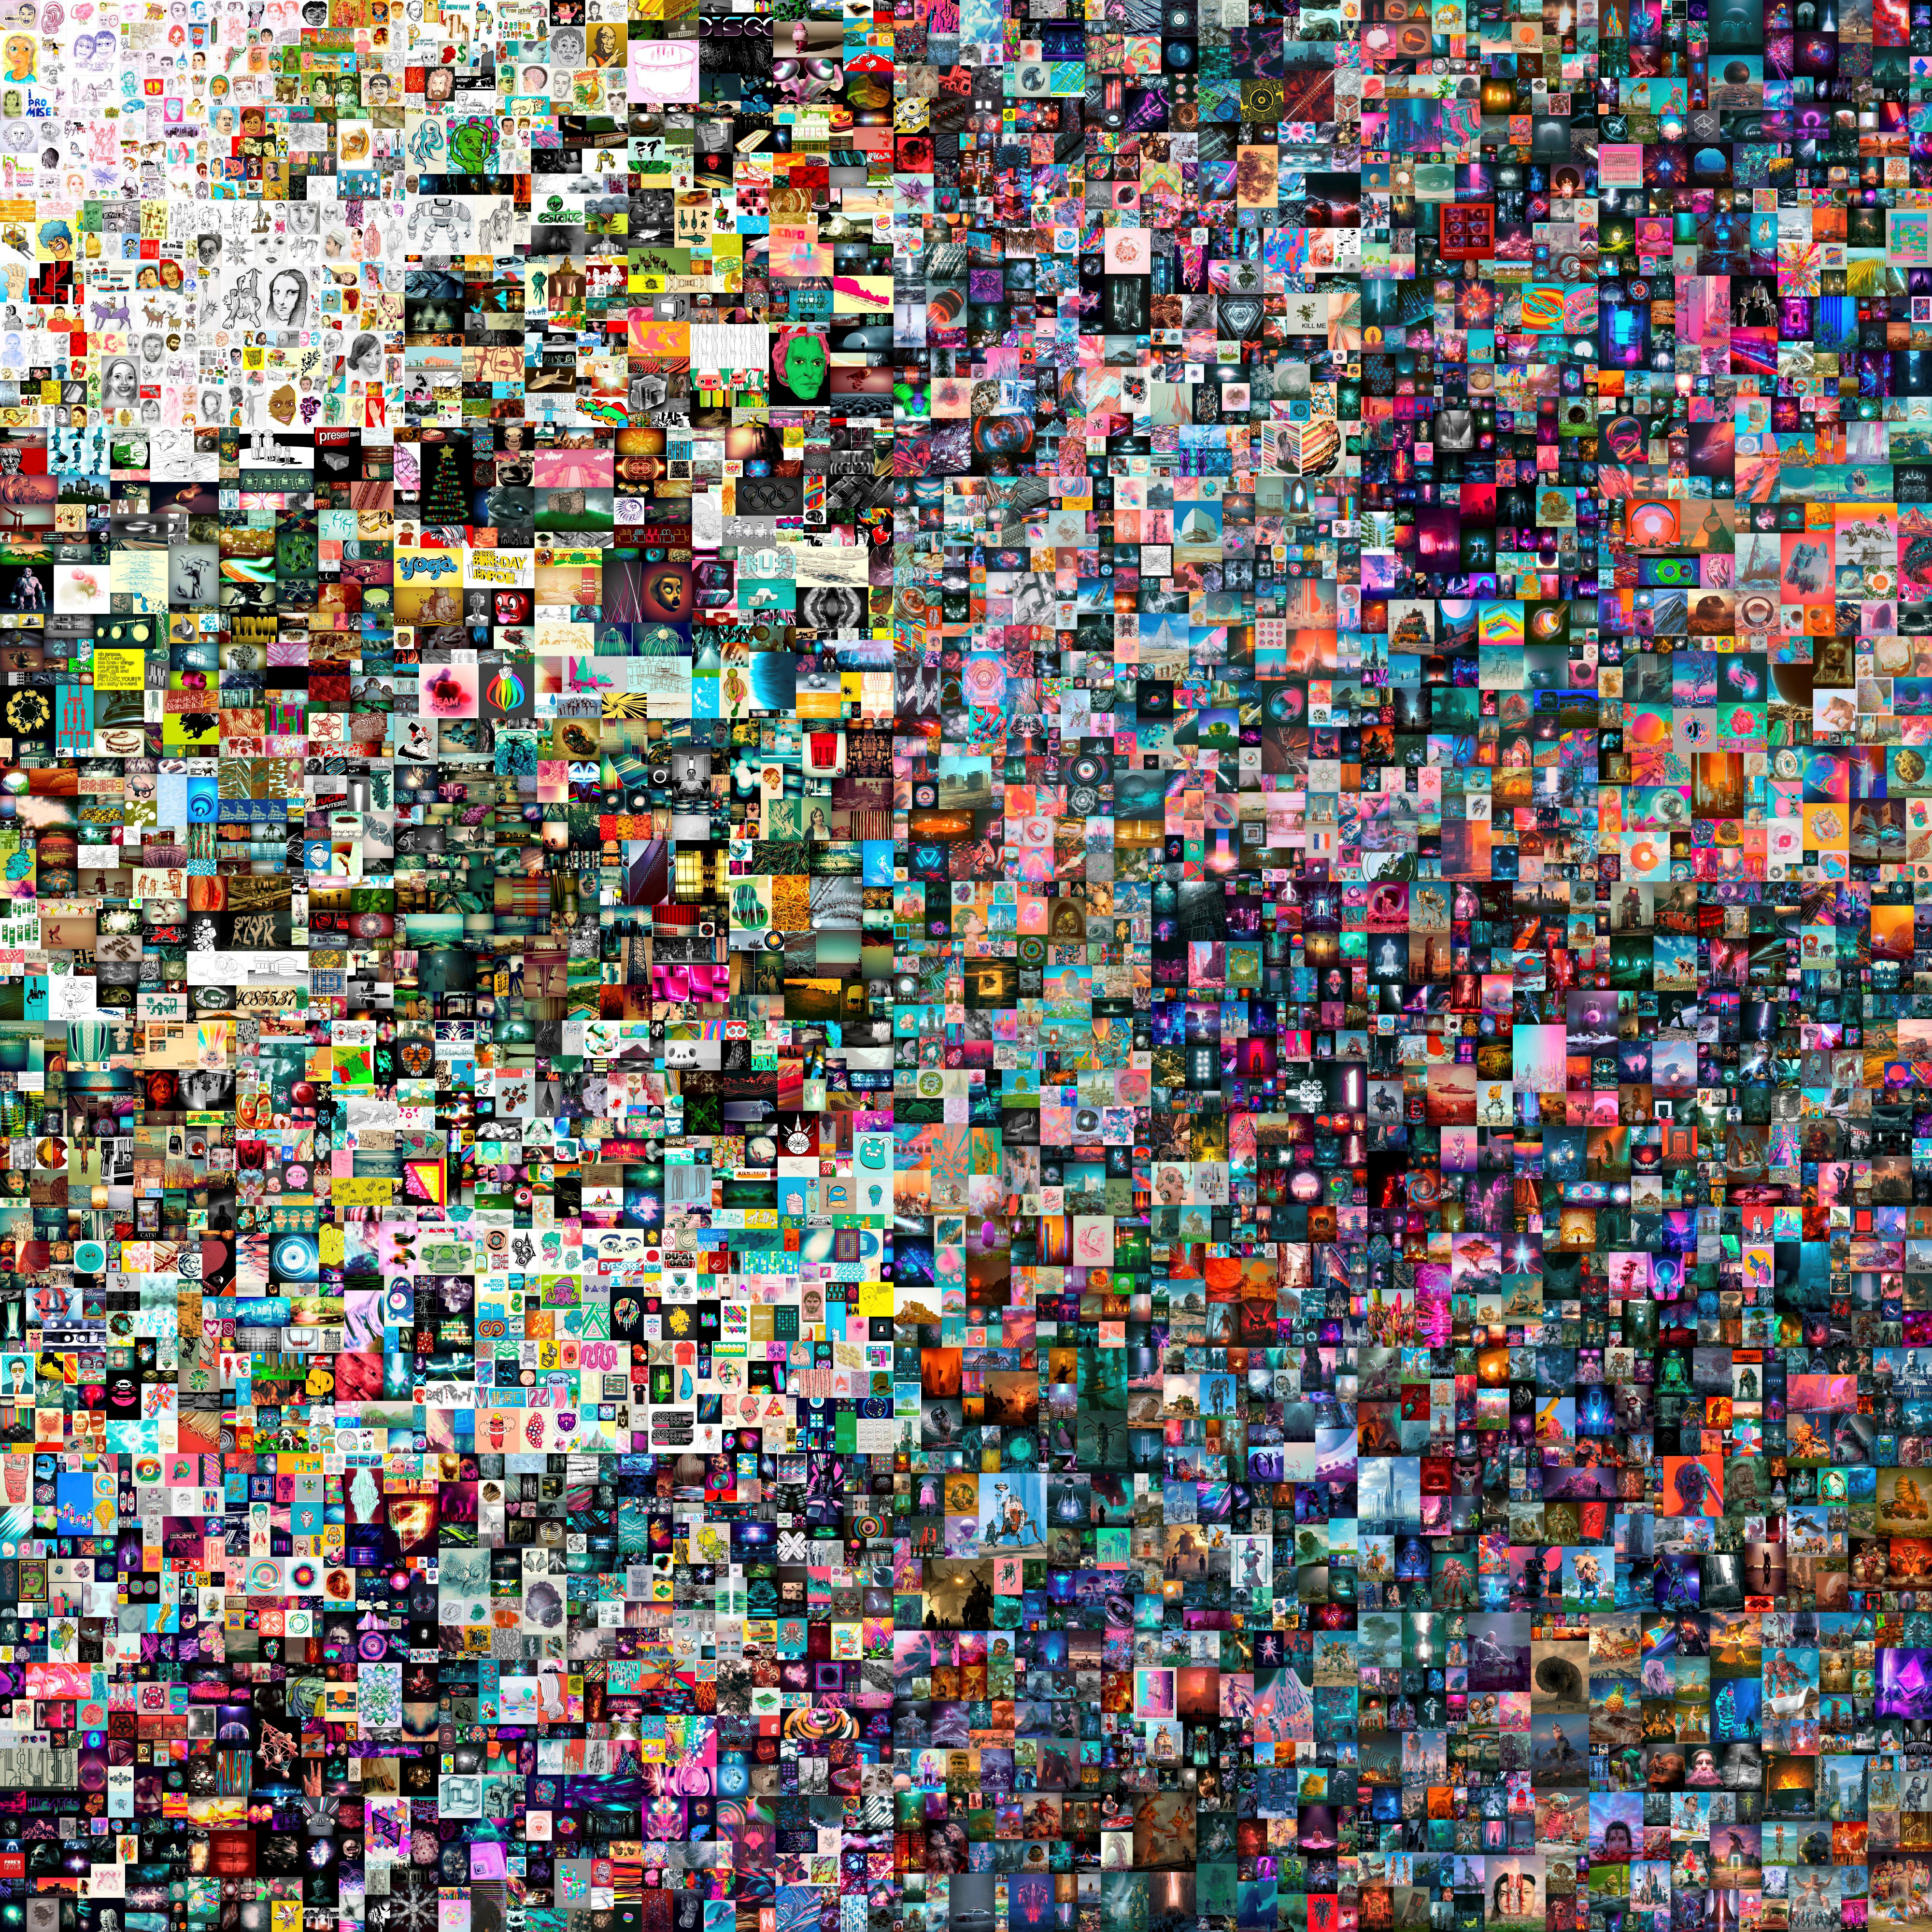 El "collage" de bytes digitales diarias de 21.069 x 21.069 pixels creado por el artista Mike Winkelmann, conocido como Beeple (MANDATORY CREDIT/File Photo)